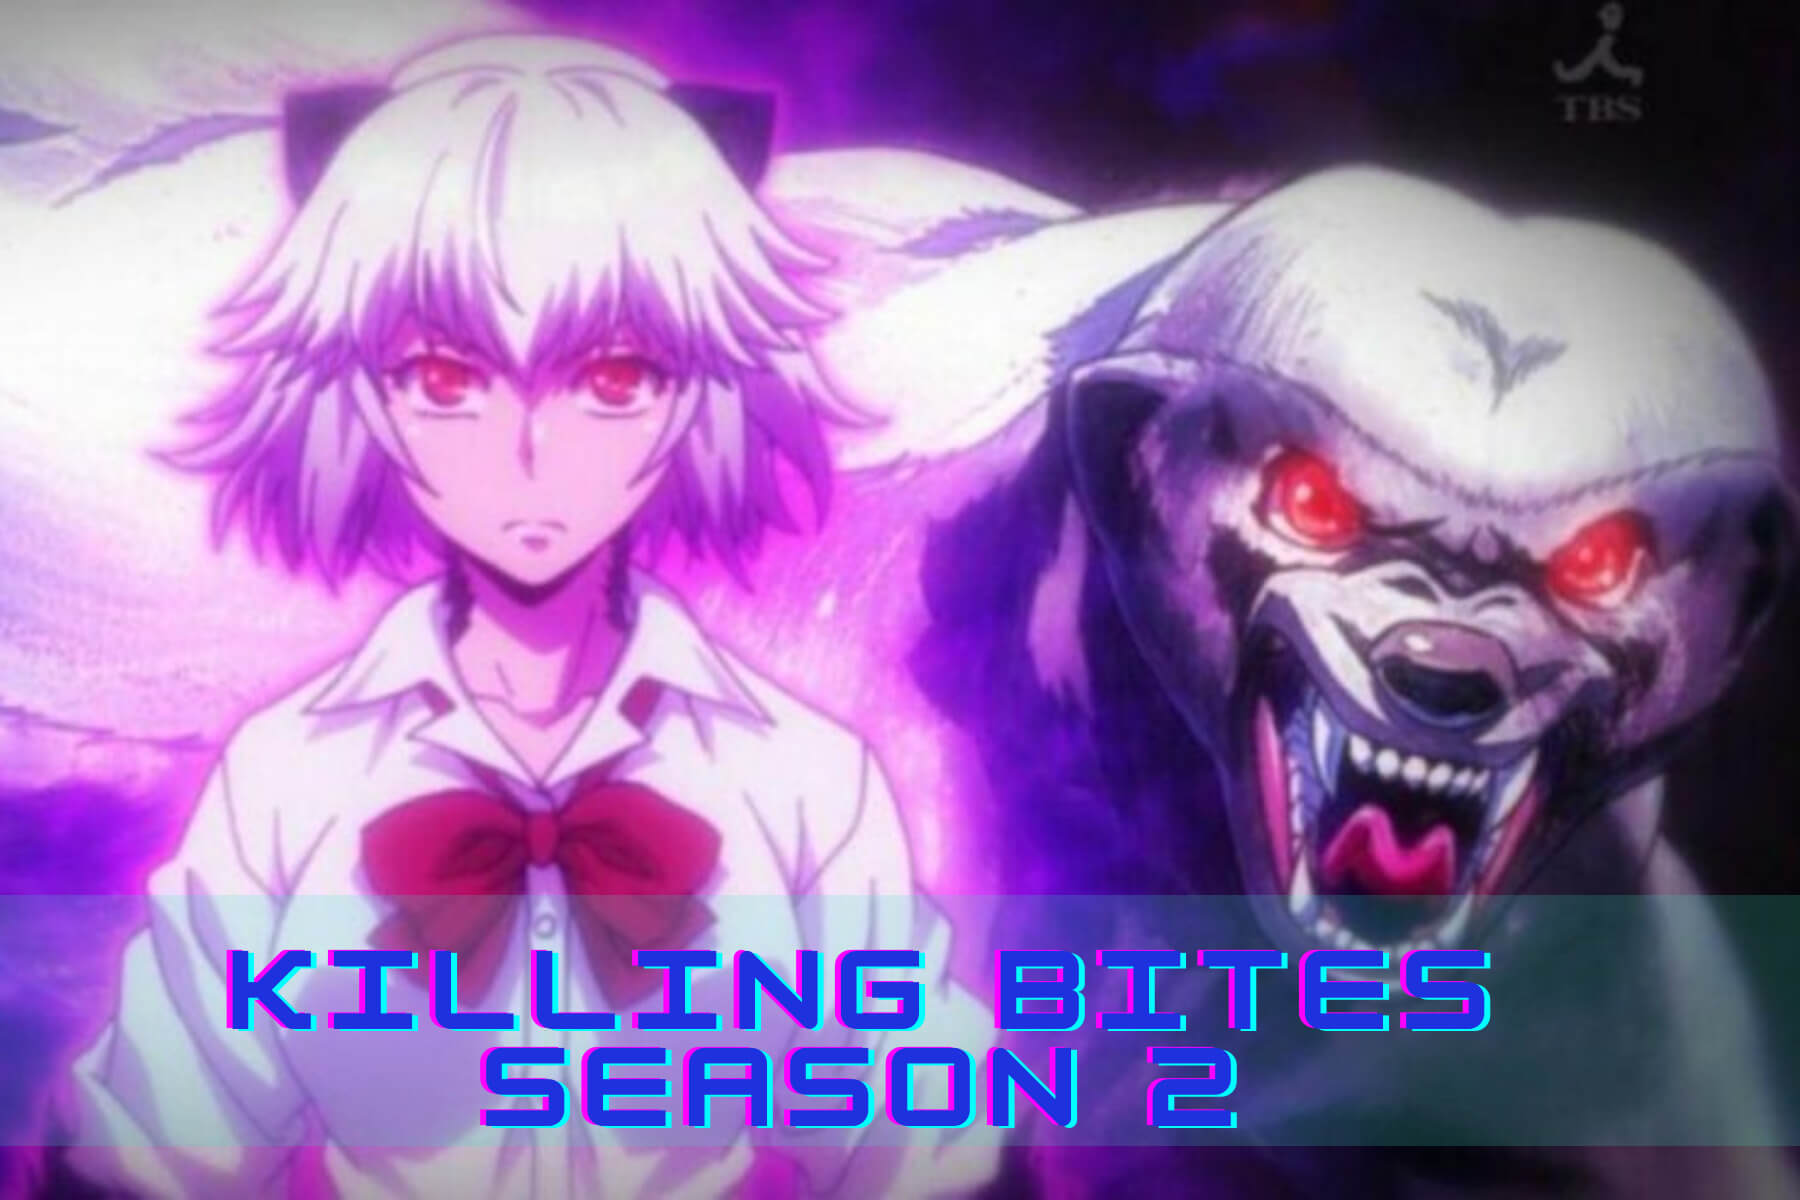 Killing Bites PV 2  Segundo PV do anime Killing Bites, mostrando